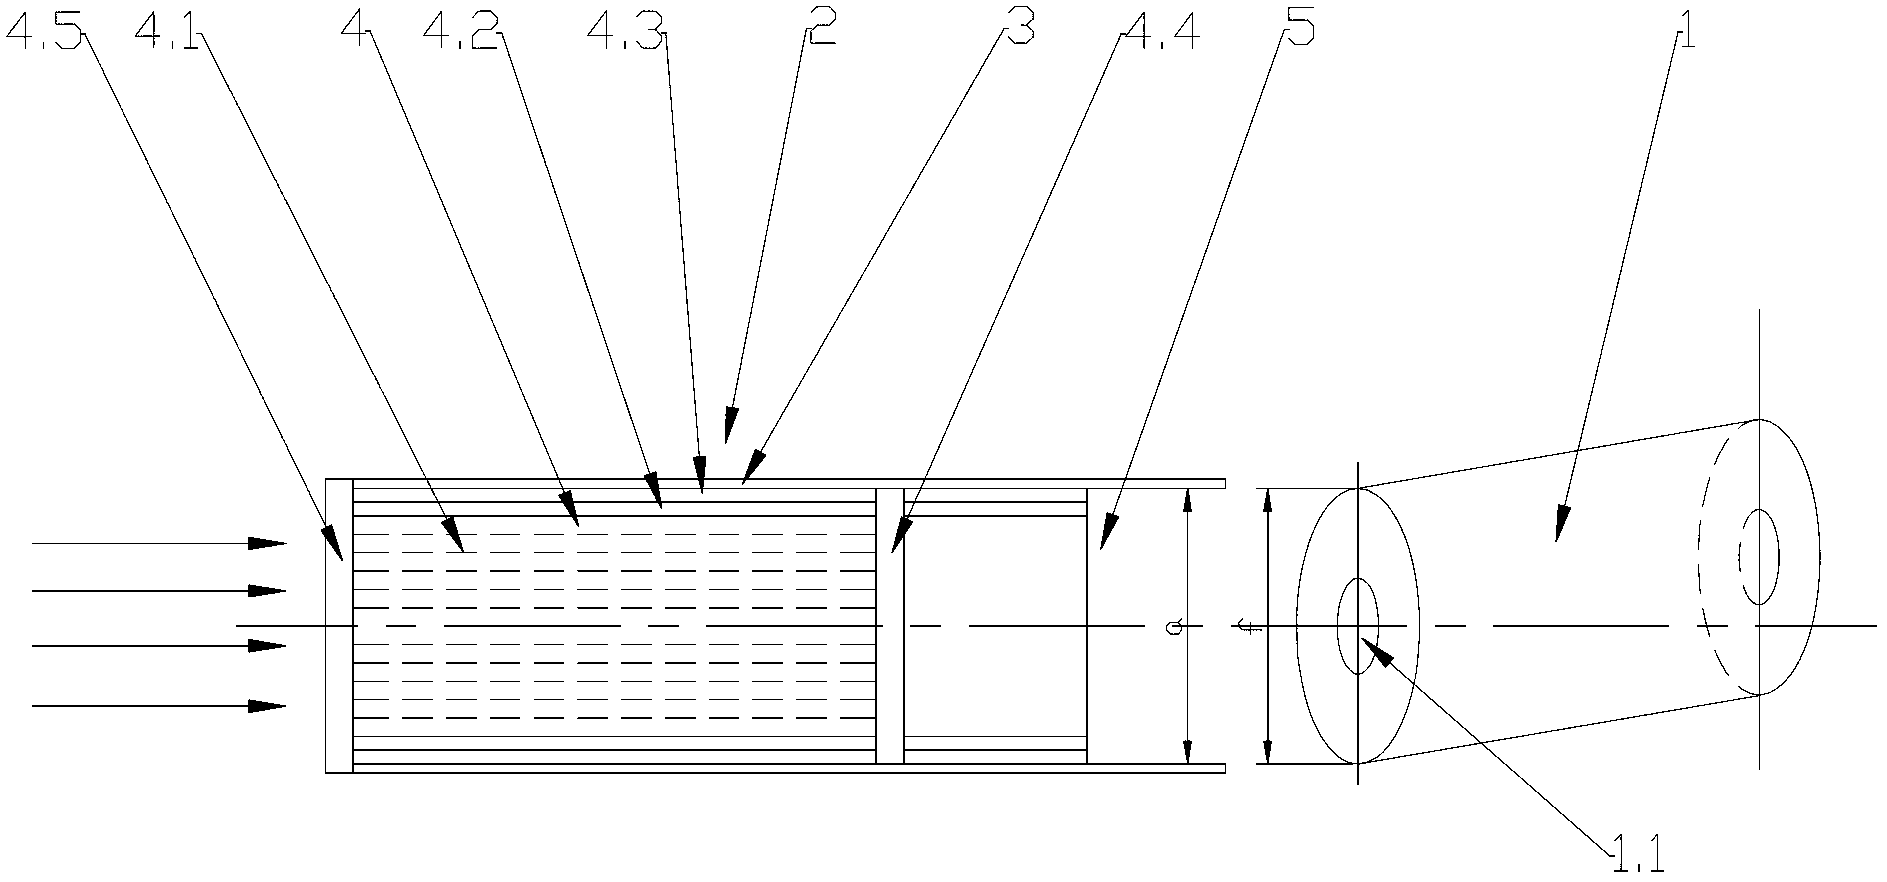 Electric heat airflow type smoking system